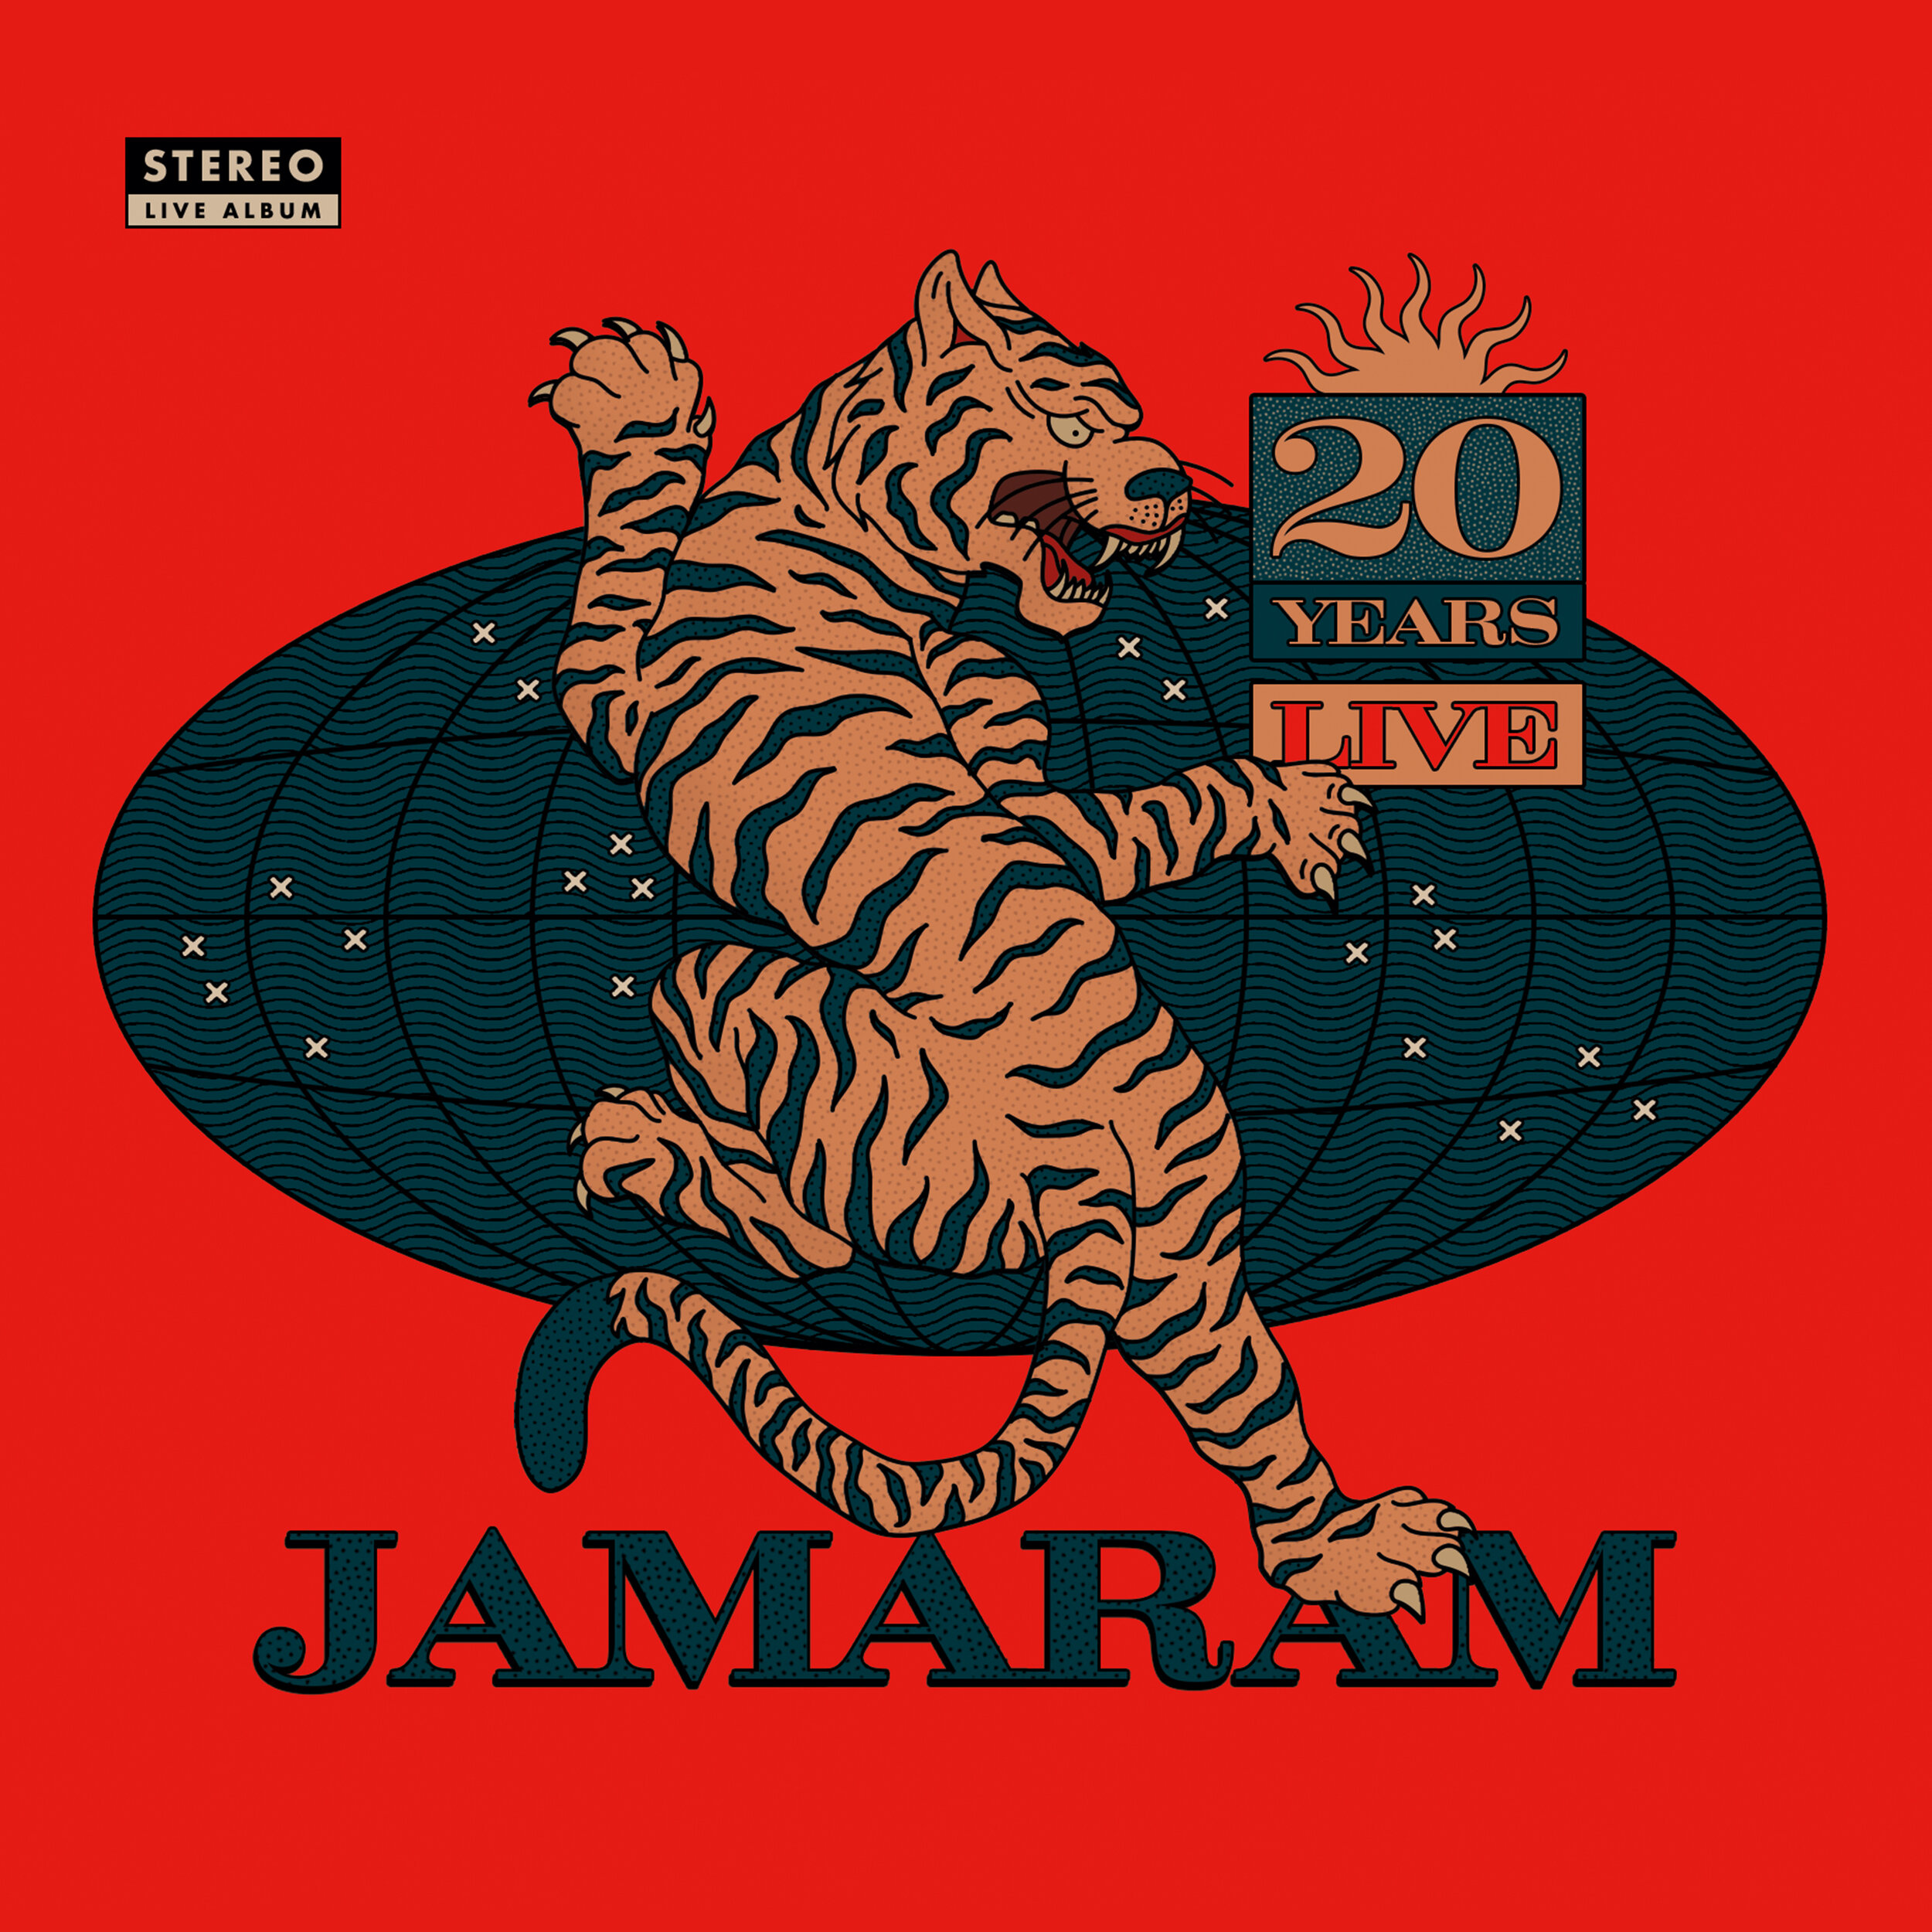 2020 - JAMARAM - 20 Years Live (live album)